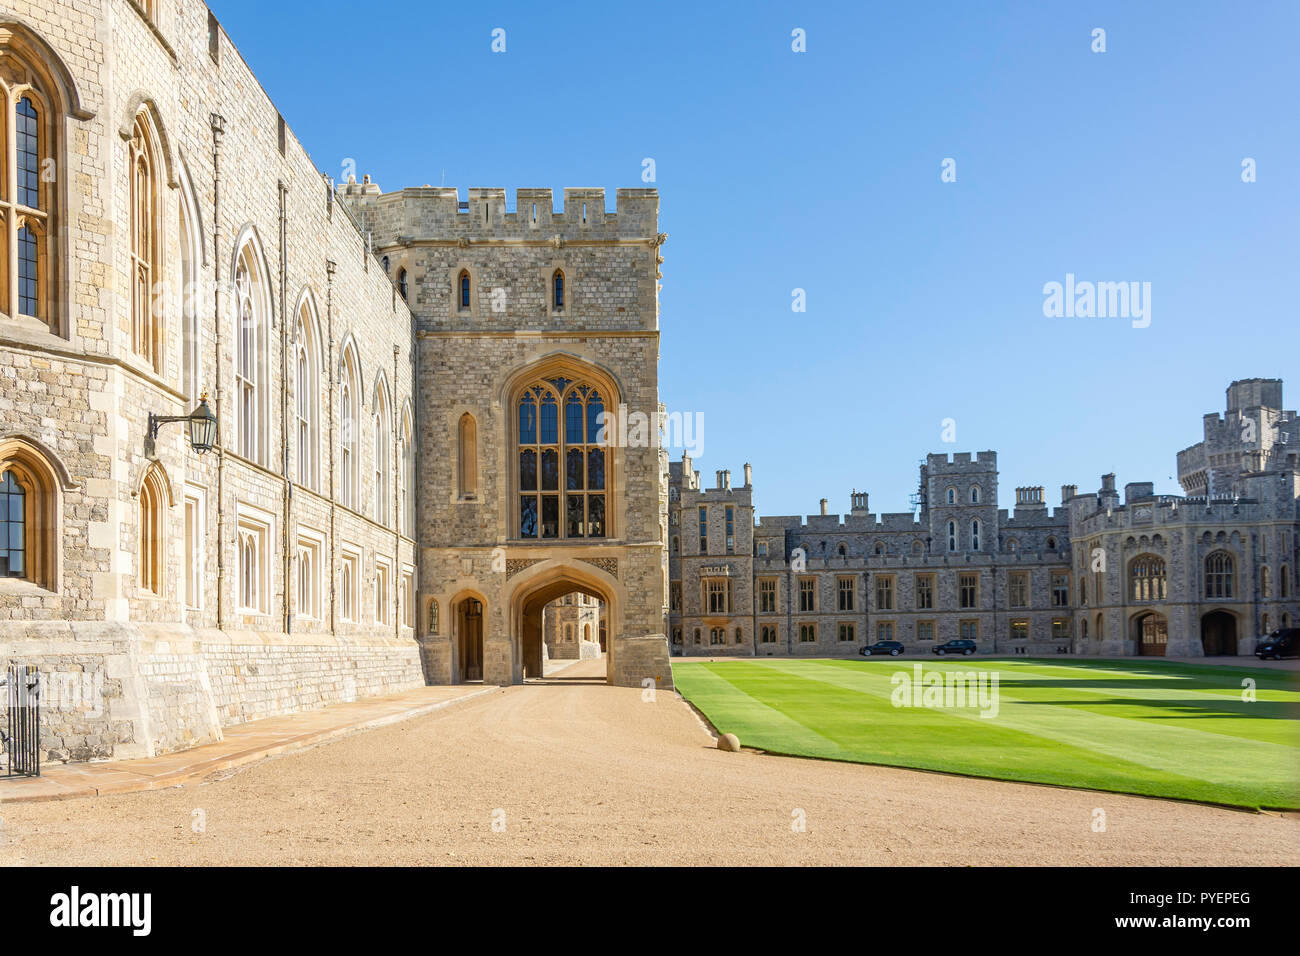 La partie supérieure de Ward et St George's Hall, l'entrée du château de Windsor, Windsor, Berkshire, Angleterre, Royaume-Uni Banque D'Images